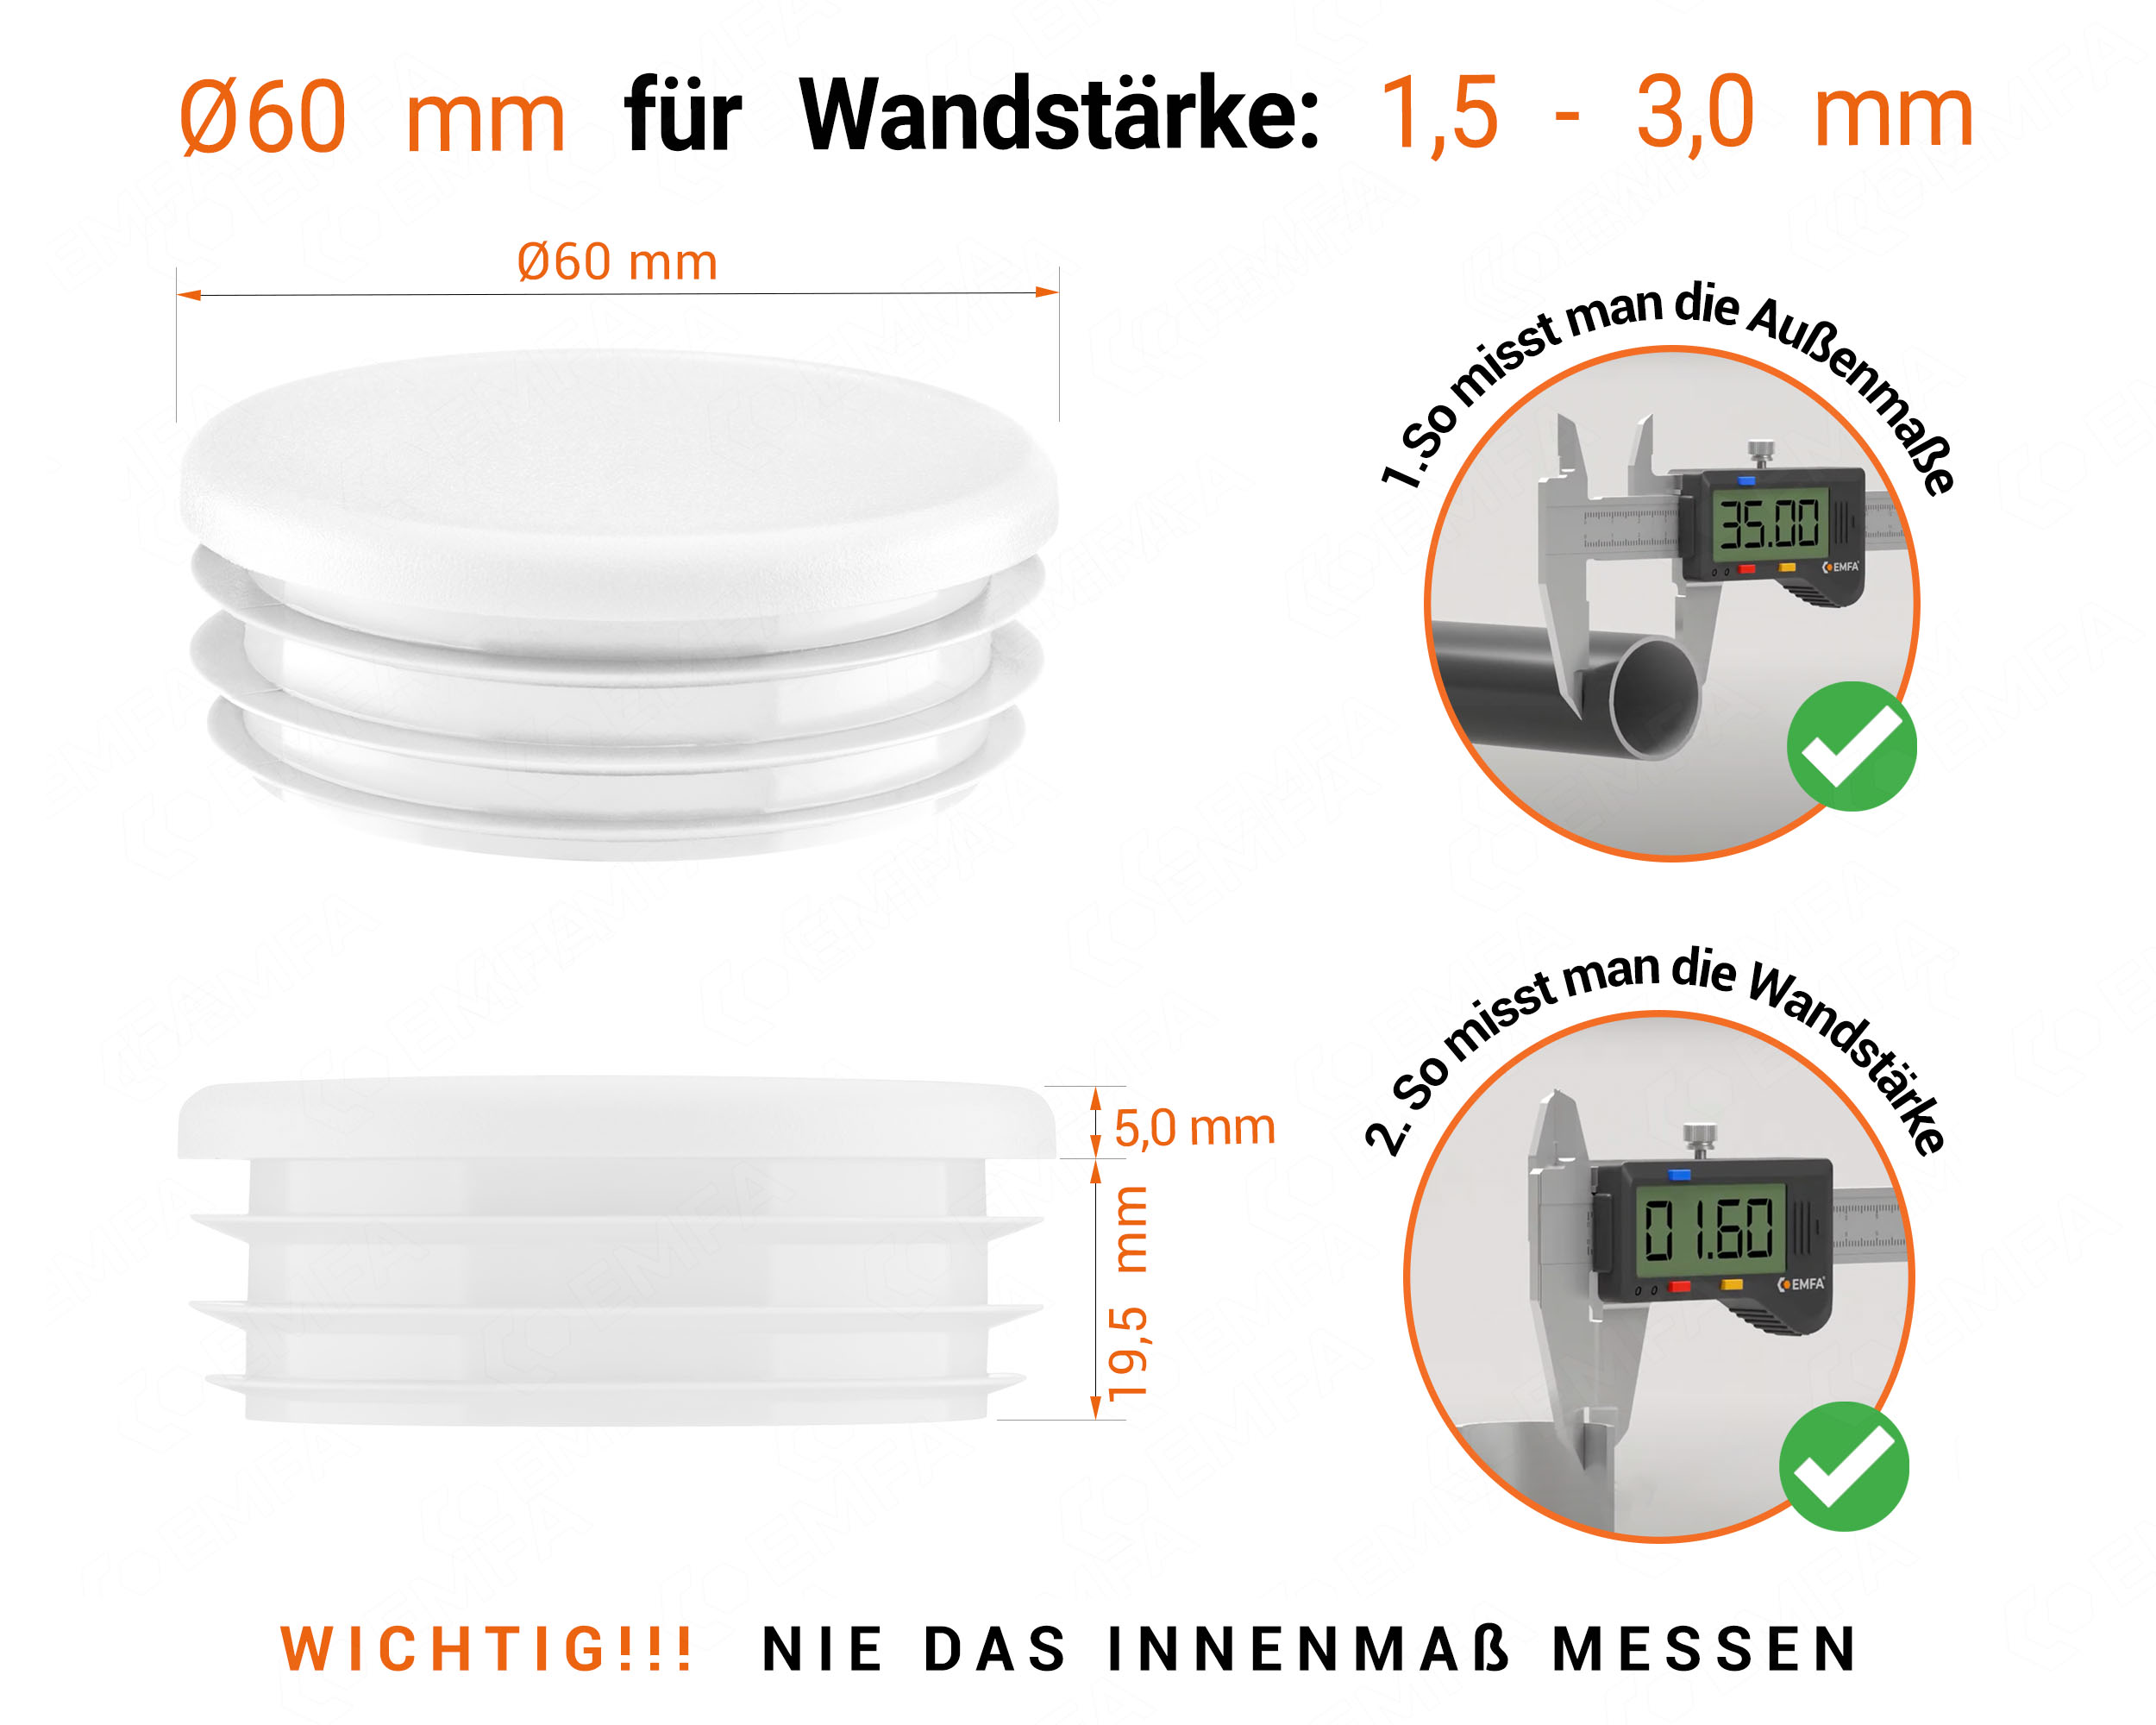 Weiße Endkappe für Rundrohre in der Größe 60 mm mit technischen Abmessungen und Anleitung für korrekte Messung